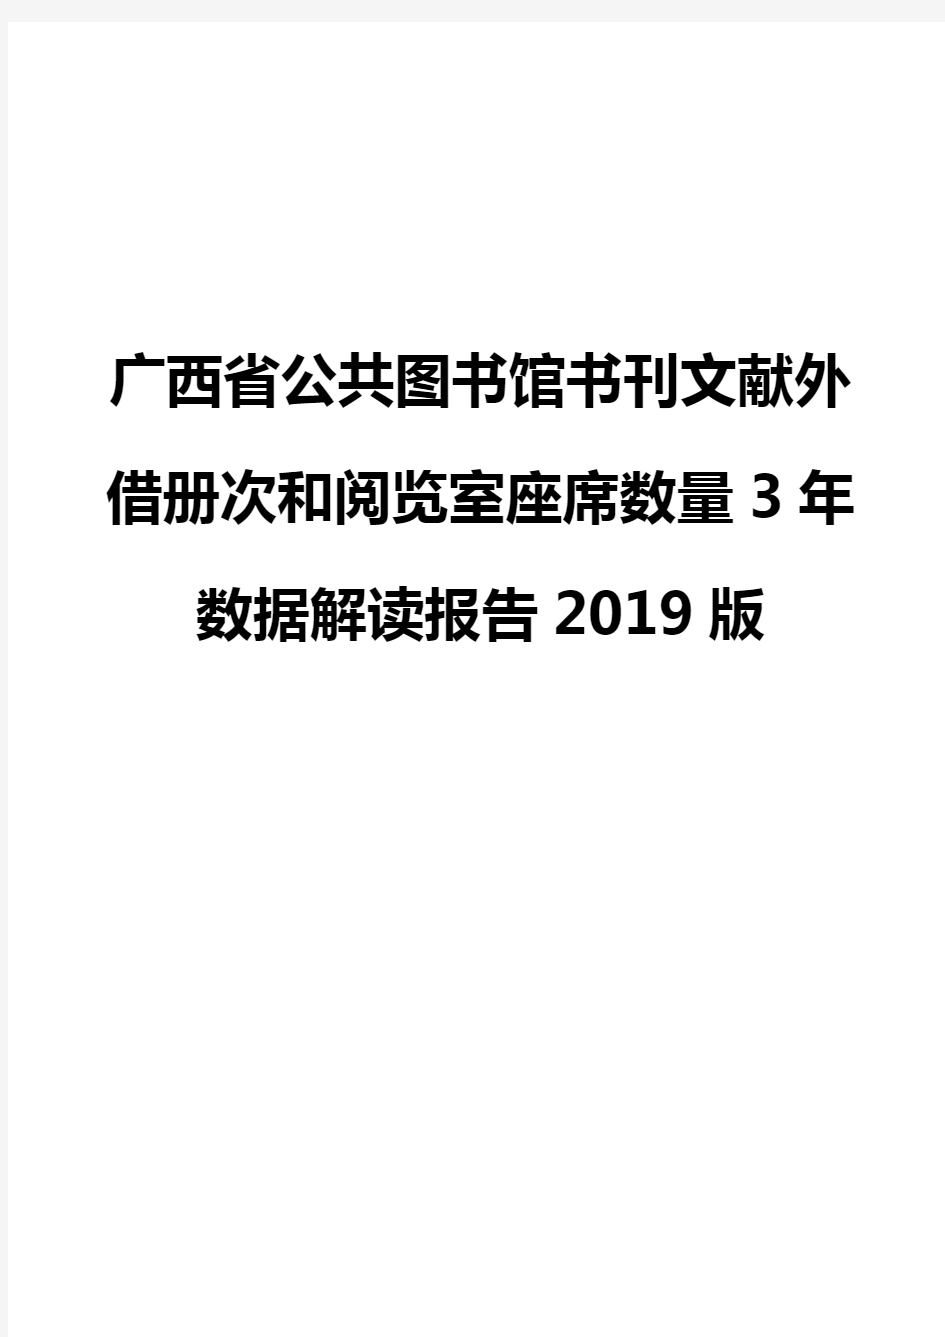 广西省公共图书馆书刊文献外借册次和阅览室座席数量3年数据解读报告2019版